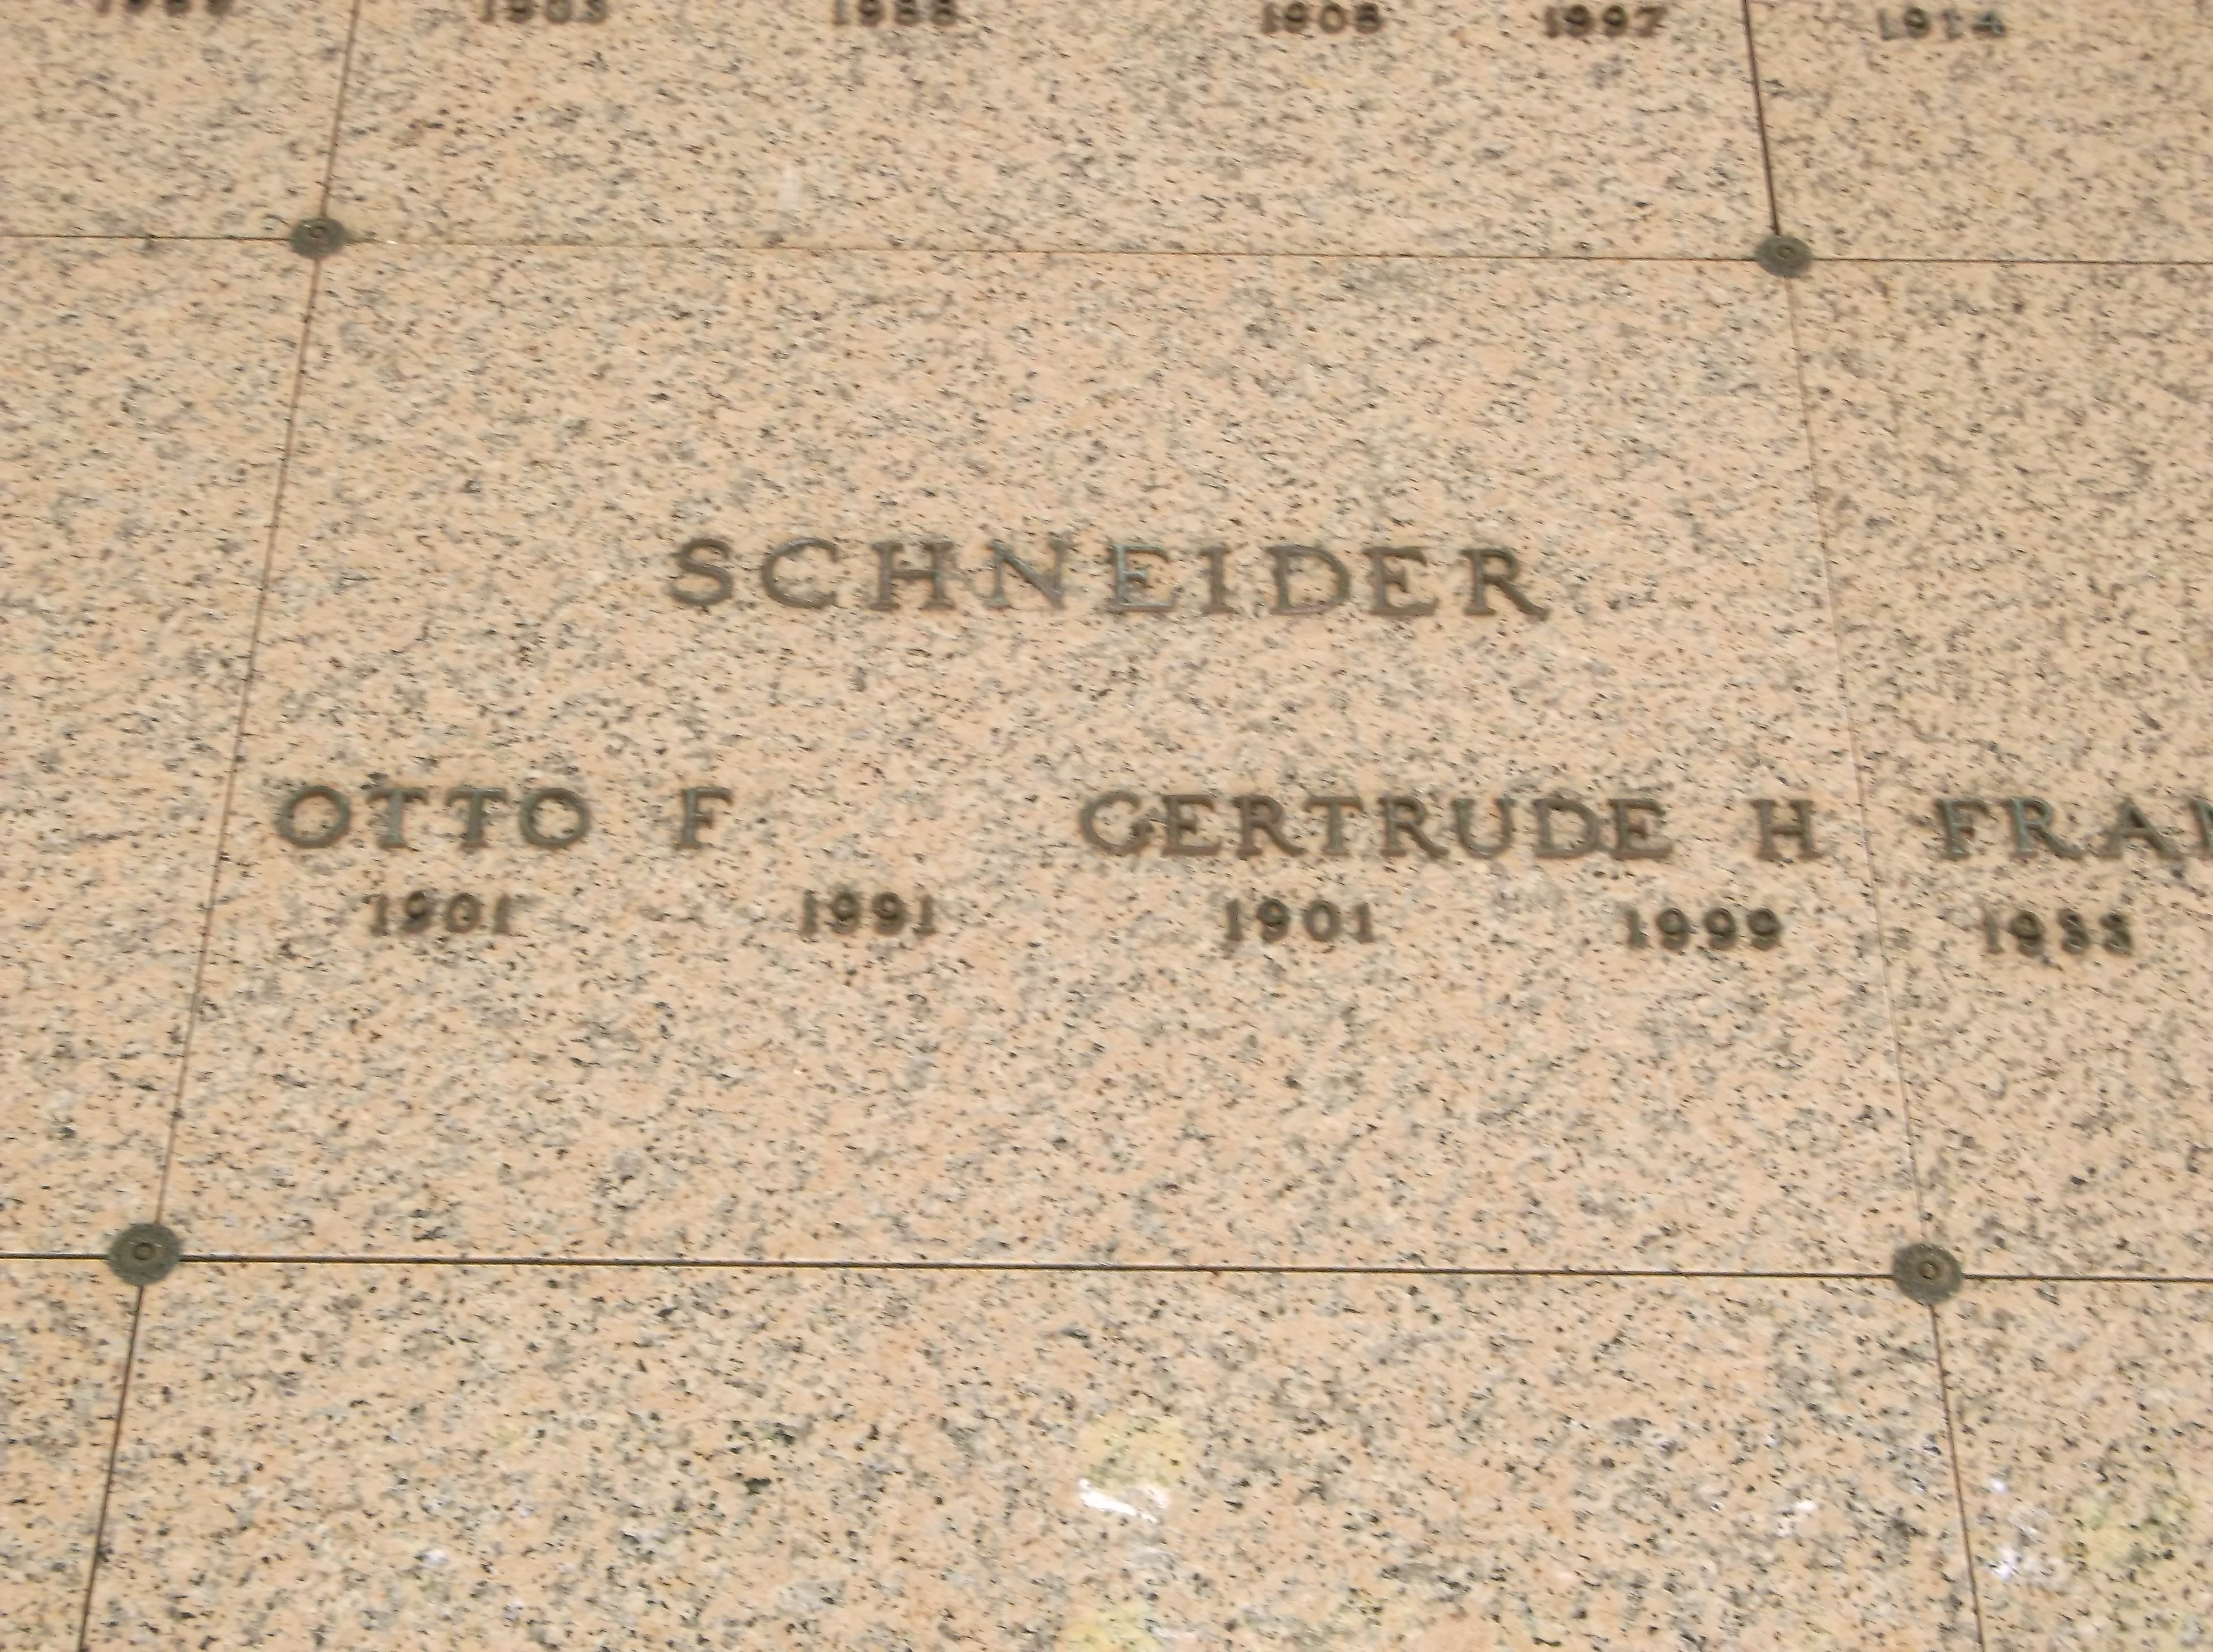 Otto F Schneider